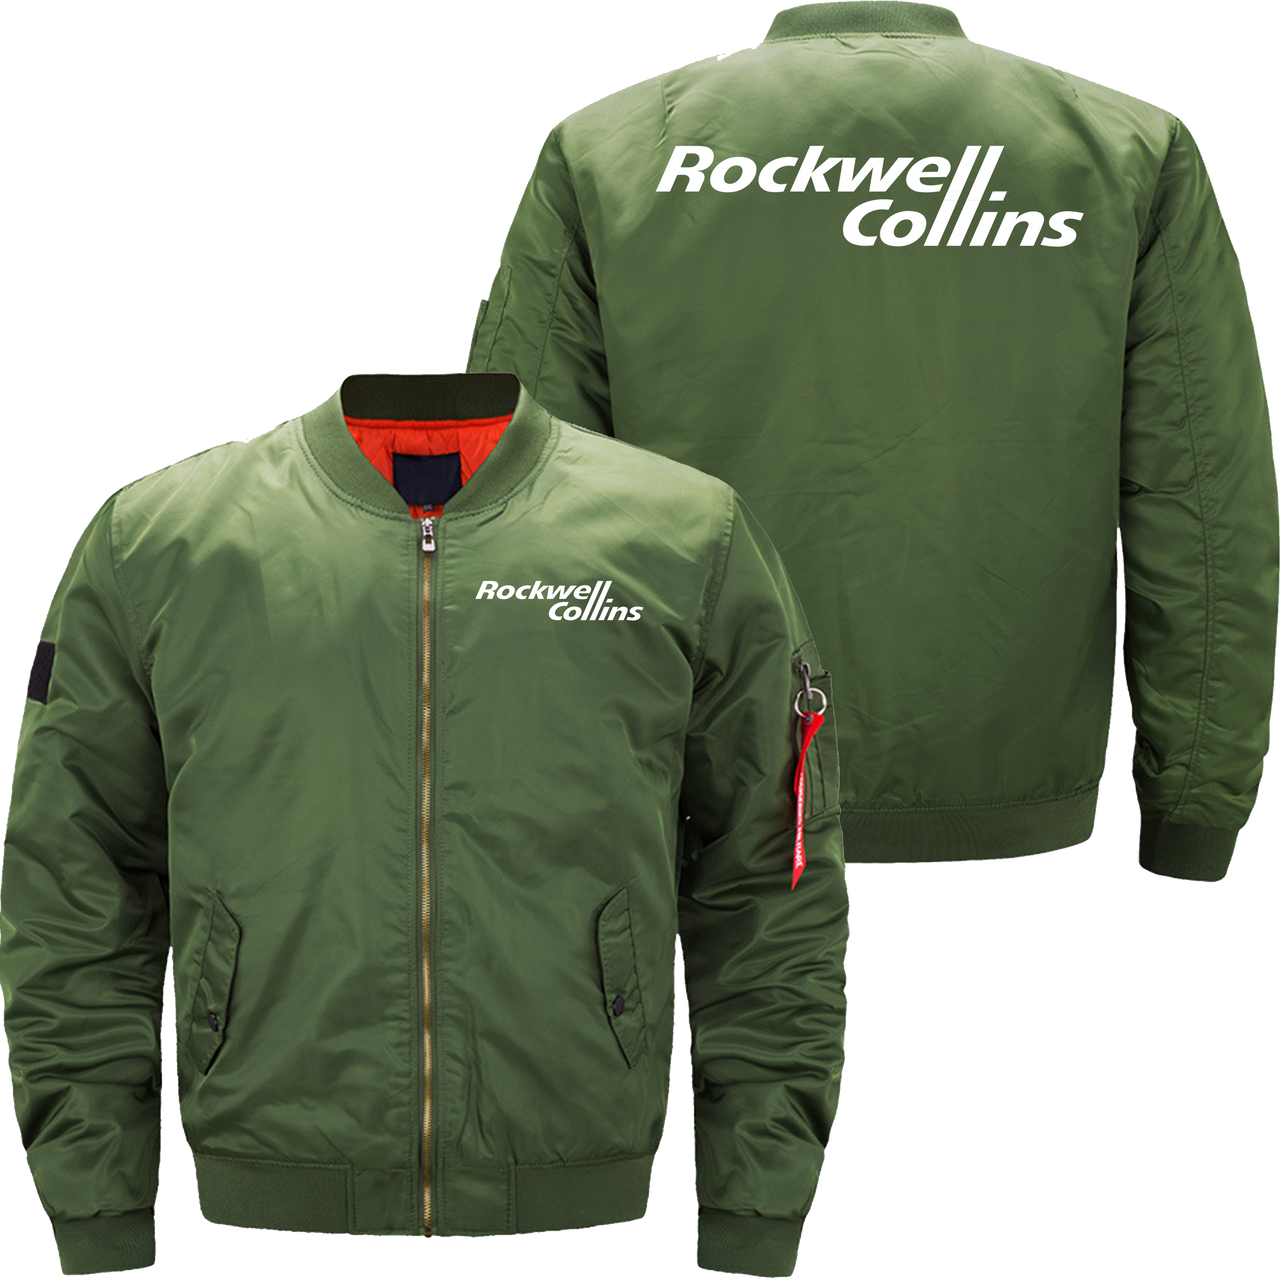 Rockwell collins Jacket